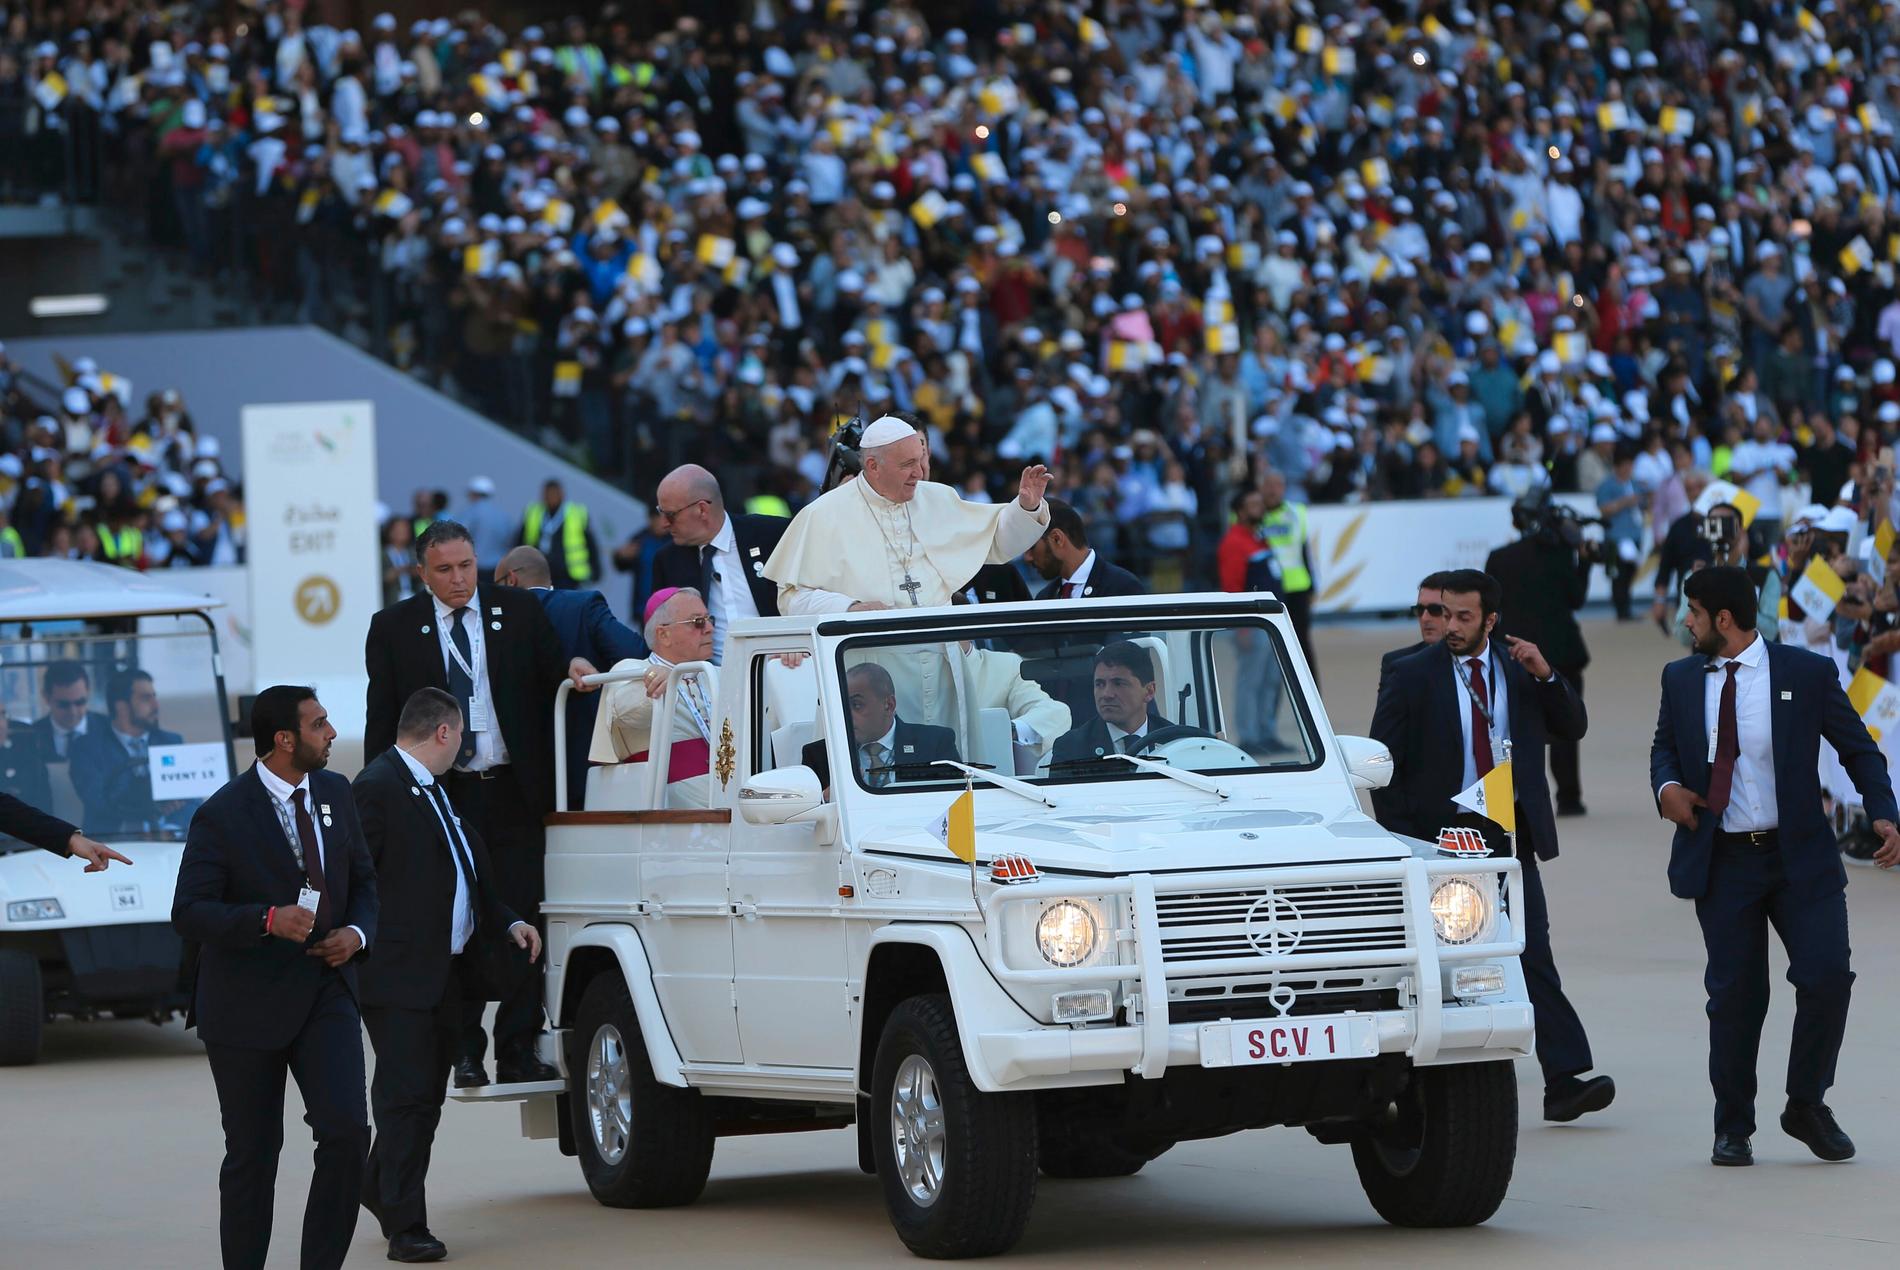 Påven anlände i en vit jeep till publikens jubel.